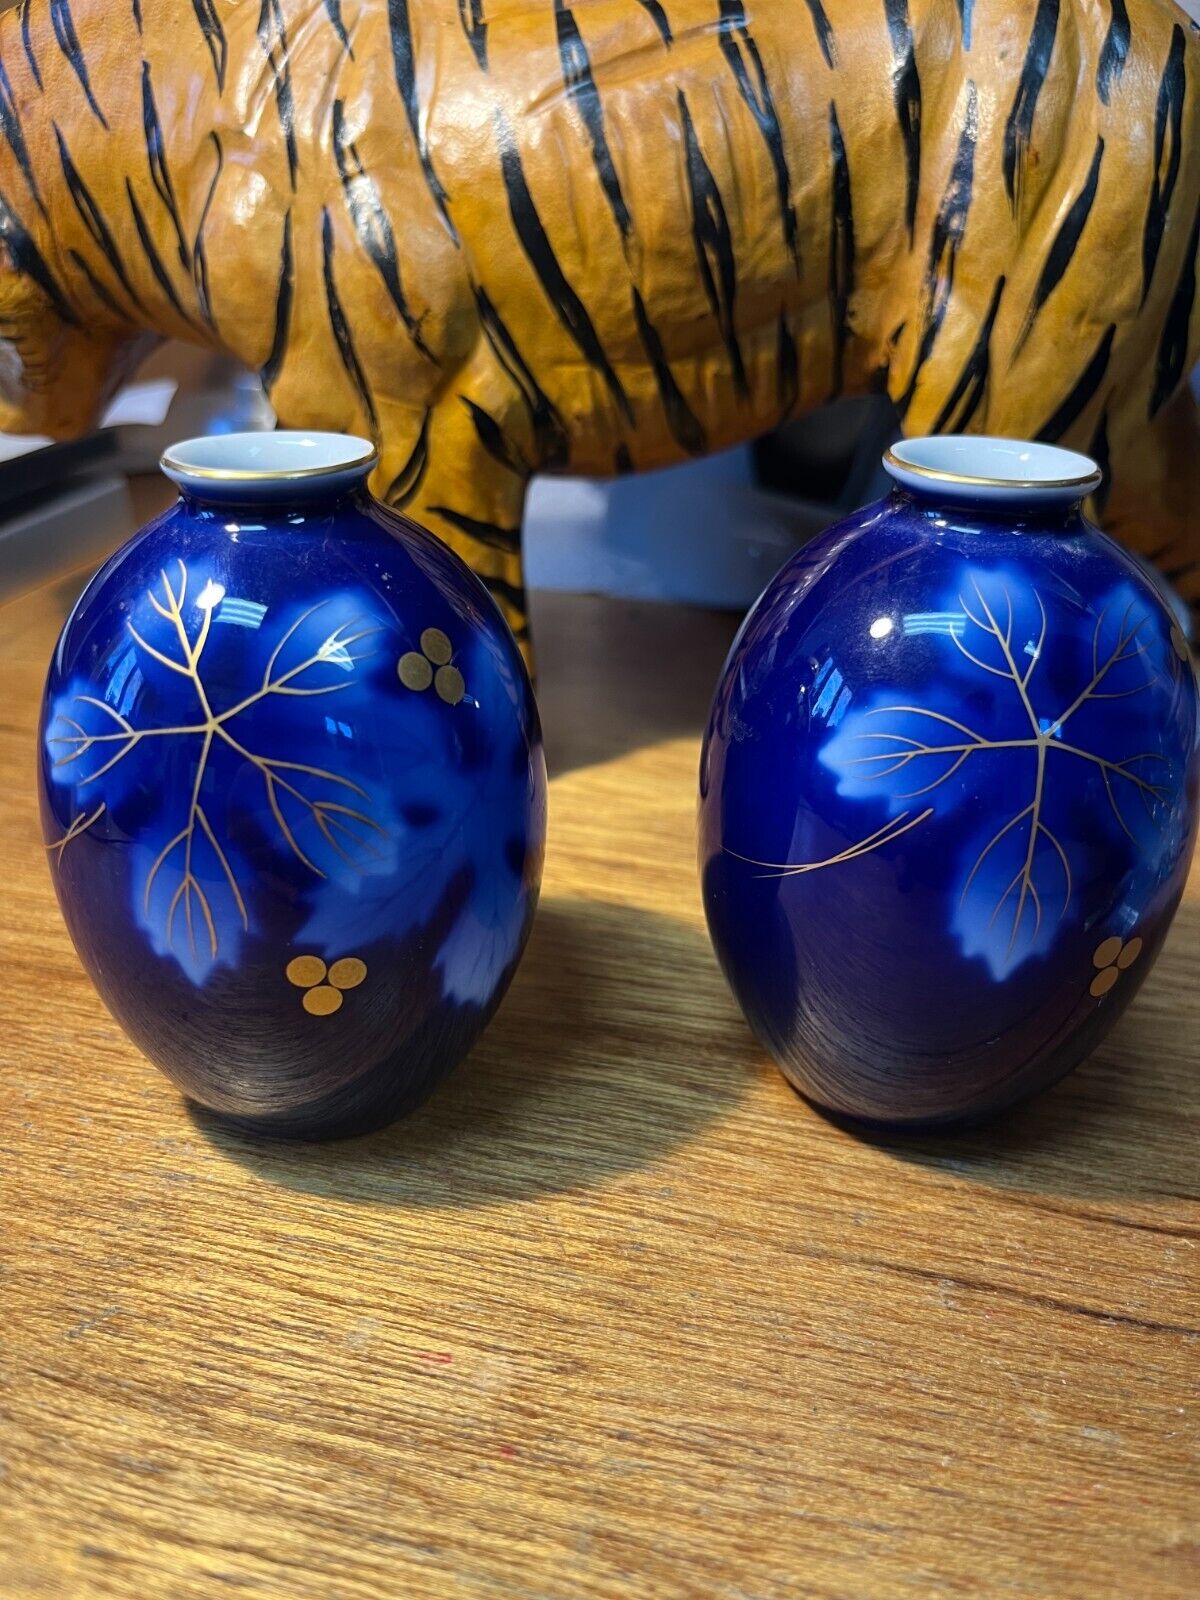 Fukagawa Arita Porcelain Cabinet Bud Vases Leaf & Berry Design Japan Blue & Gold